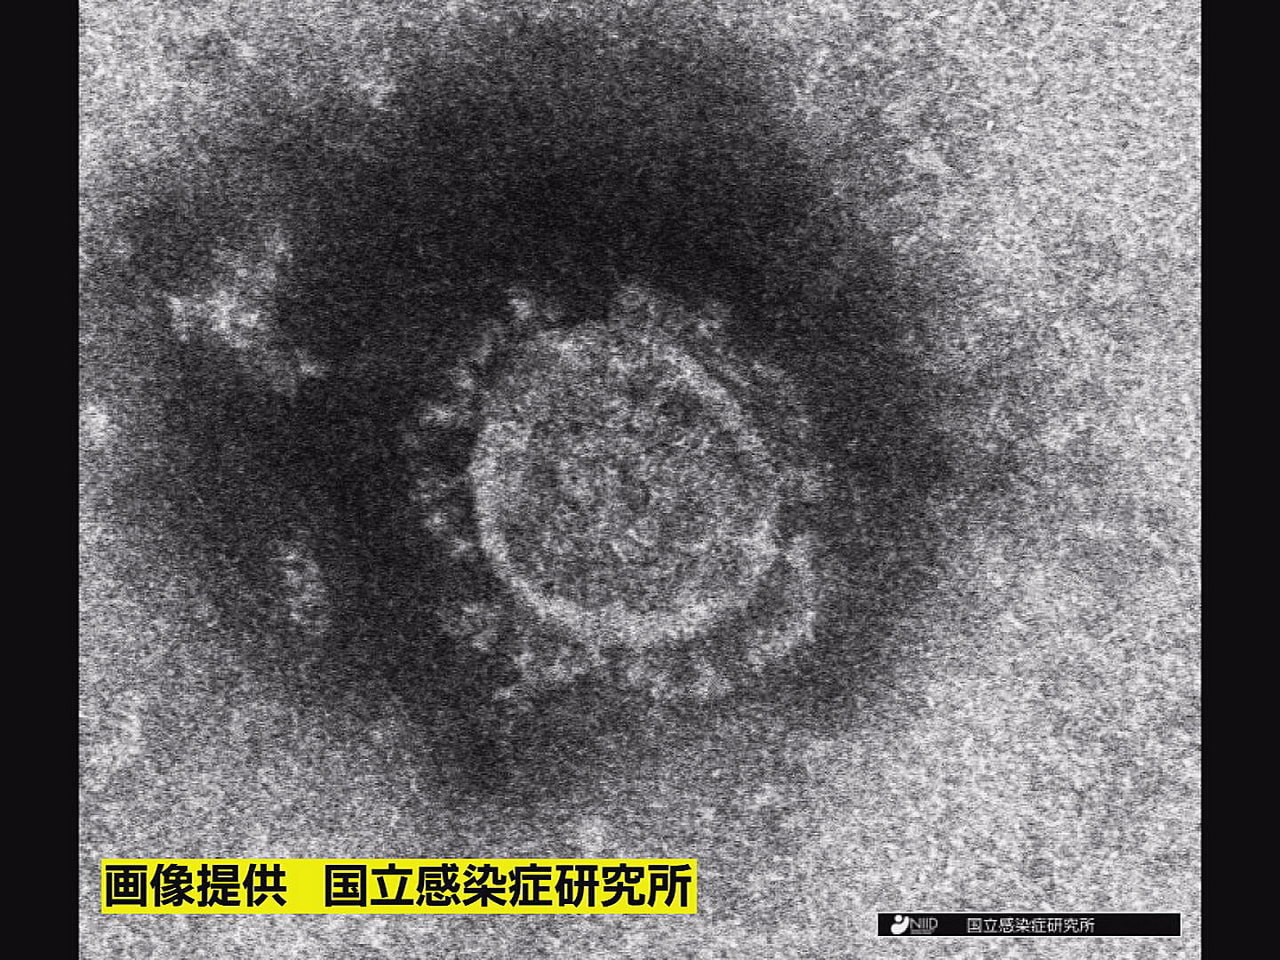 岐阜県は１３日、新型コロナウイルスの新規感染者が１２３人確認されたと発表しました...